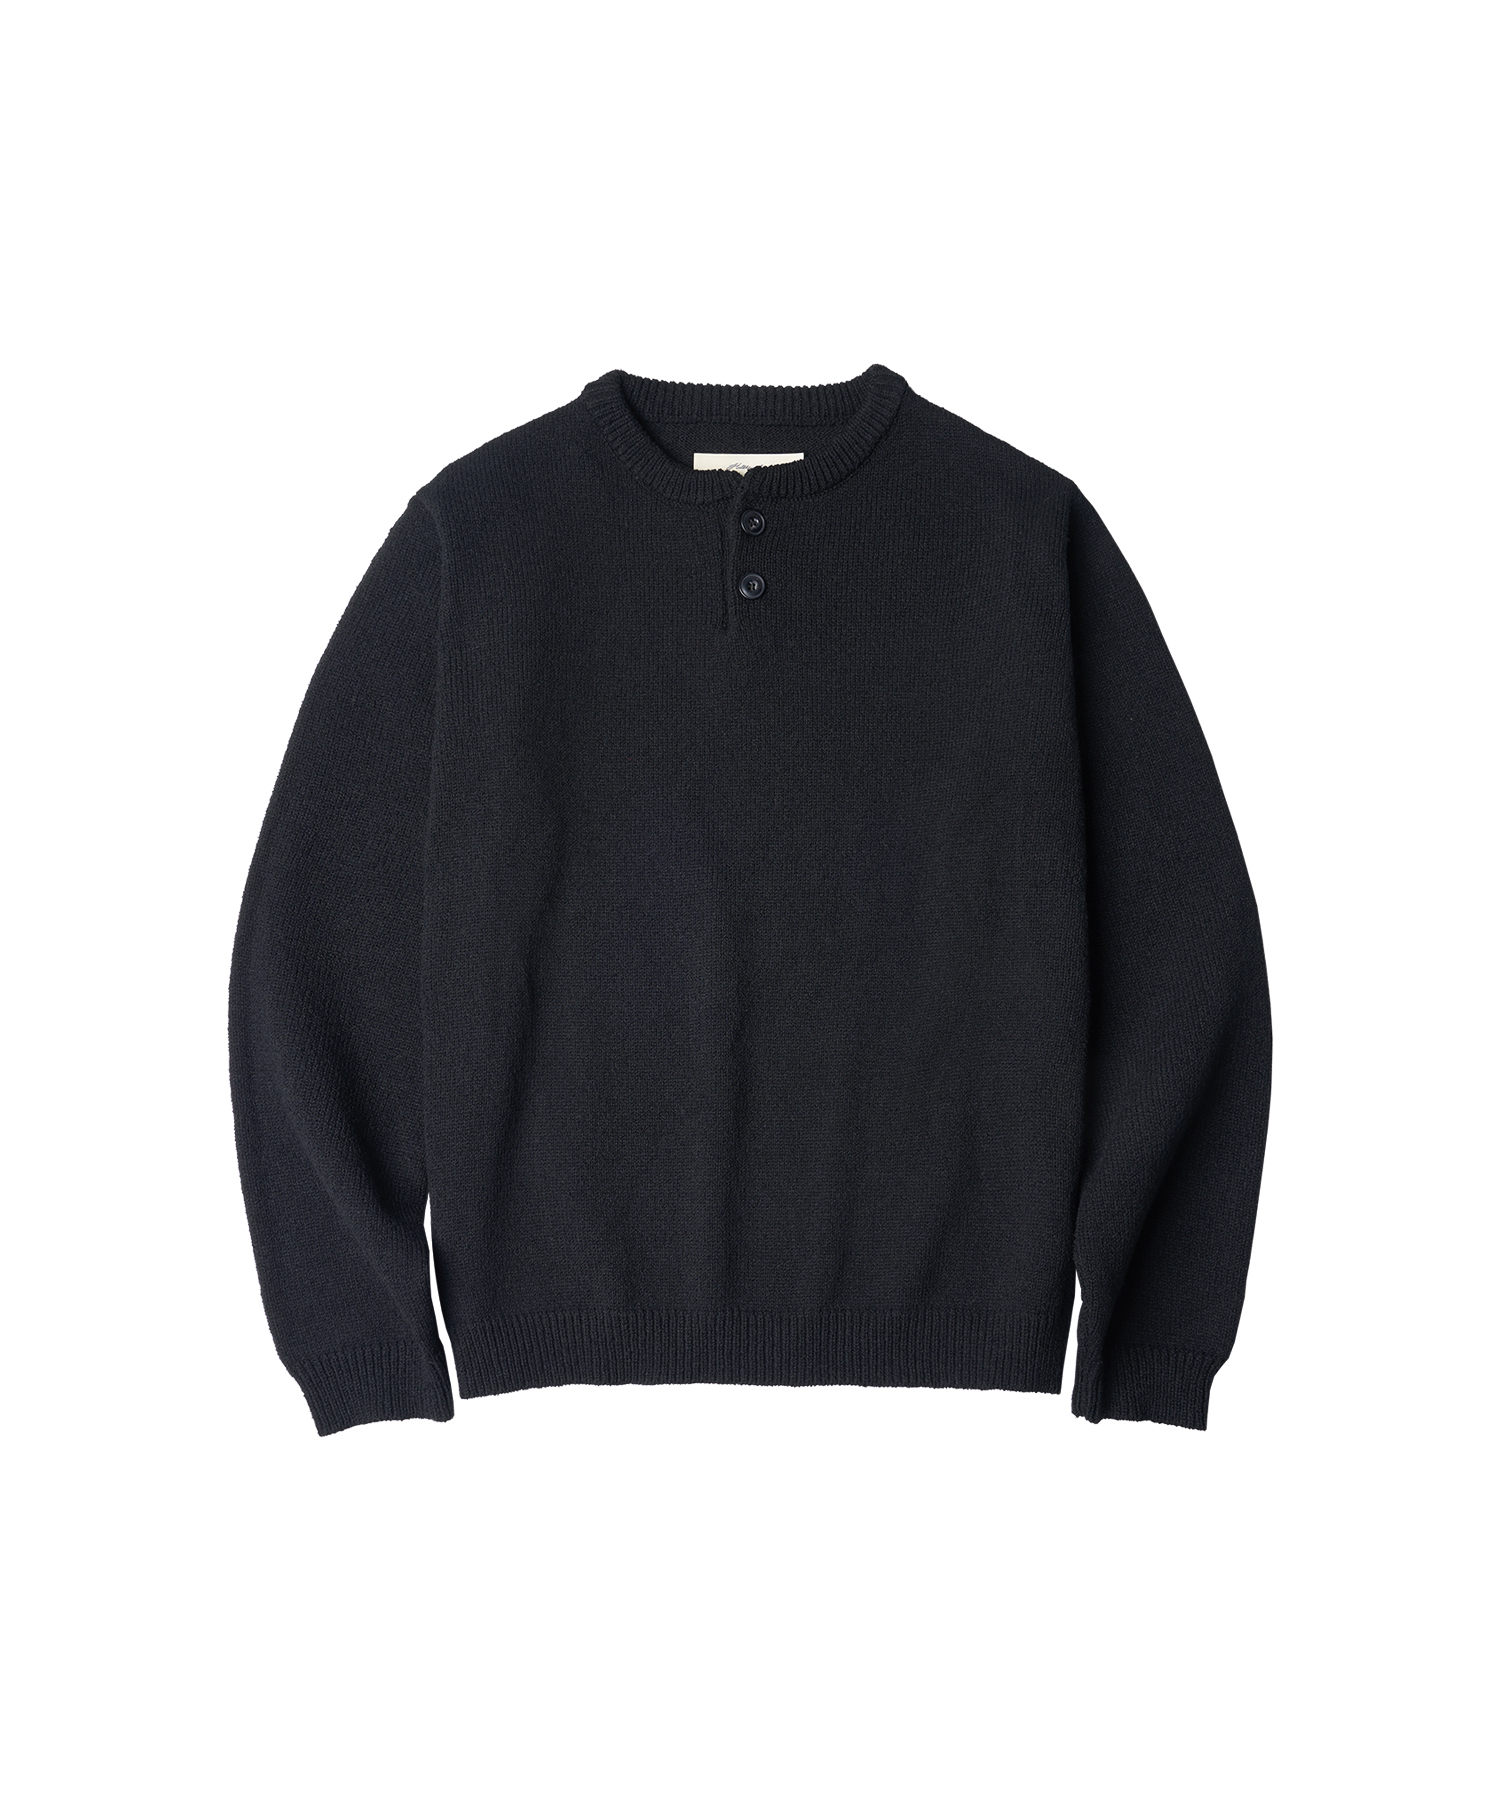 T20025 Henly-neck knit_Black